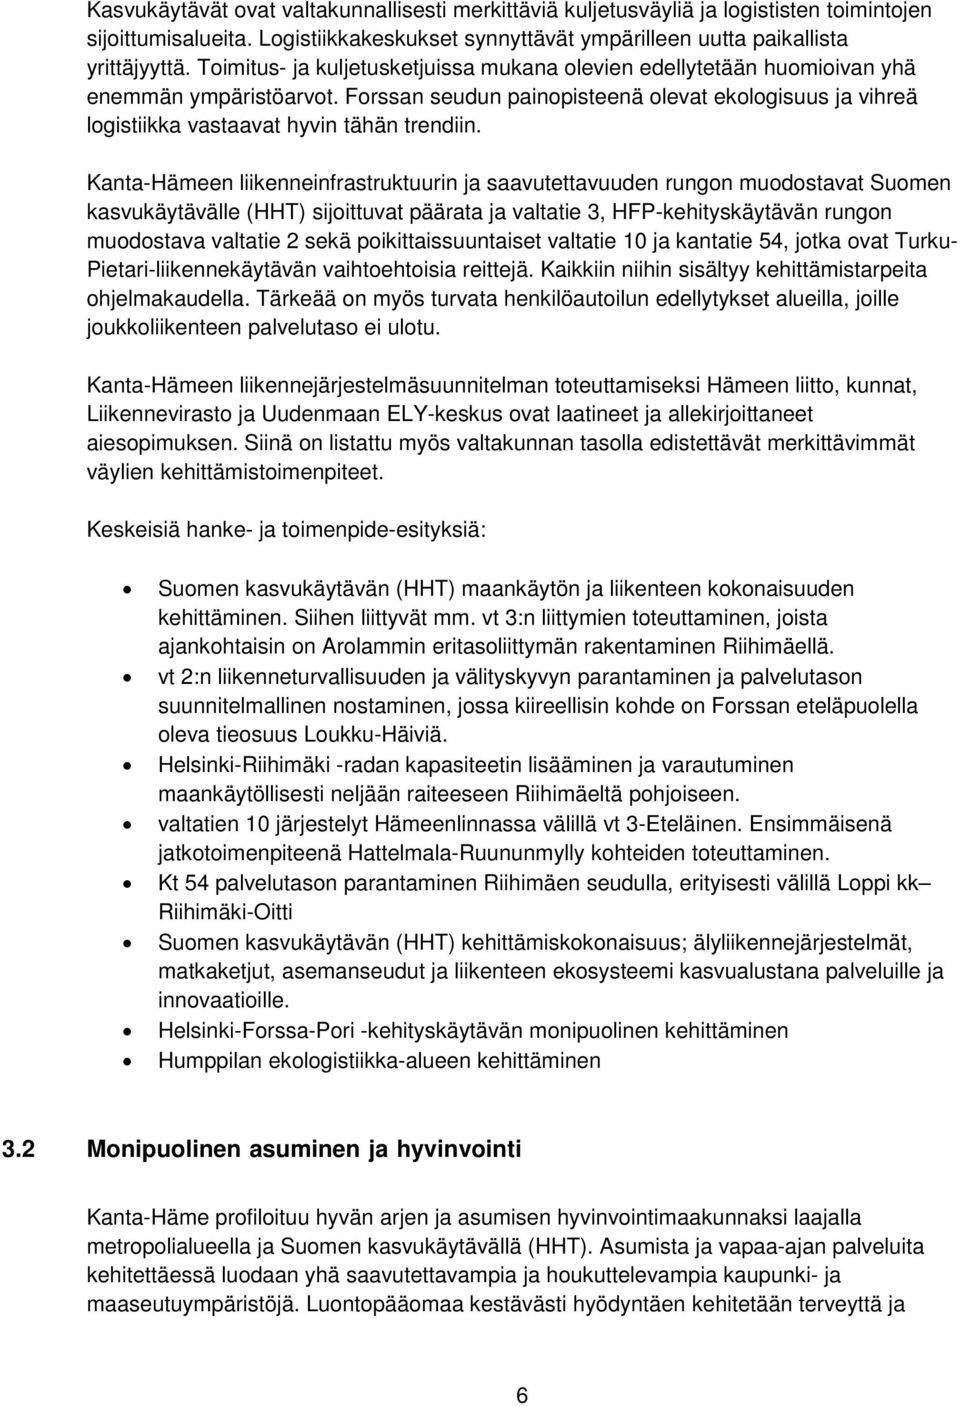 Kanta-Hämeen liikenneinfrastruktuurin ja saavutettavuuden rungon muodostavat Suomen kasvukäytävälle (HHT) sijoittuvat päärata ja valtatie 3, HFP-kehityskäytävän rungon muodostava valtatie 2 sekä